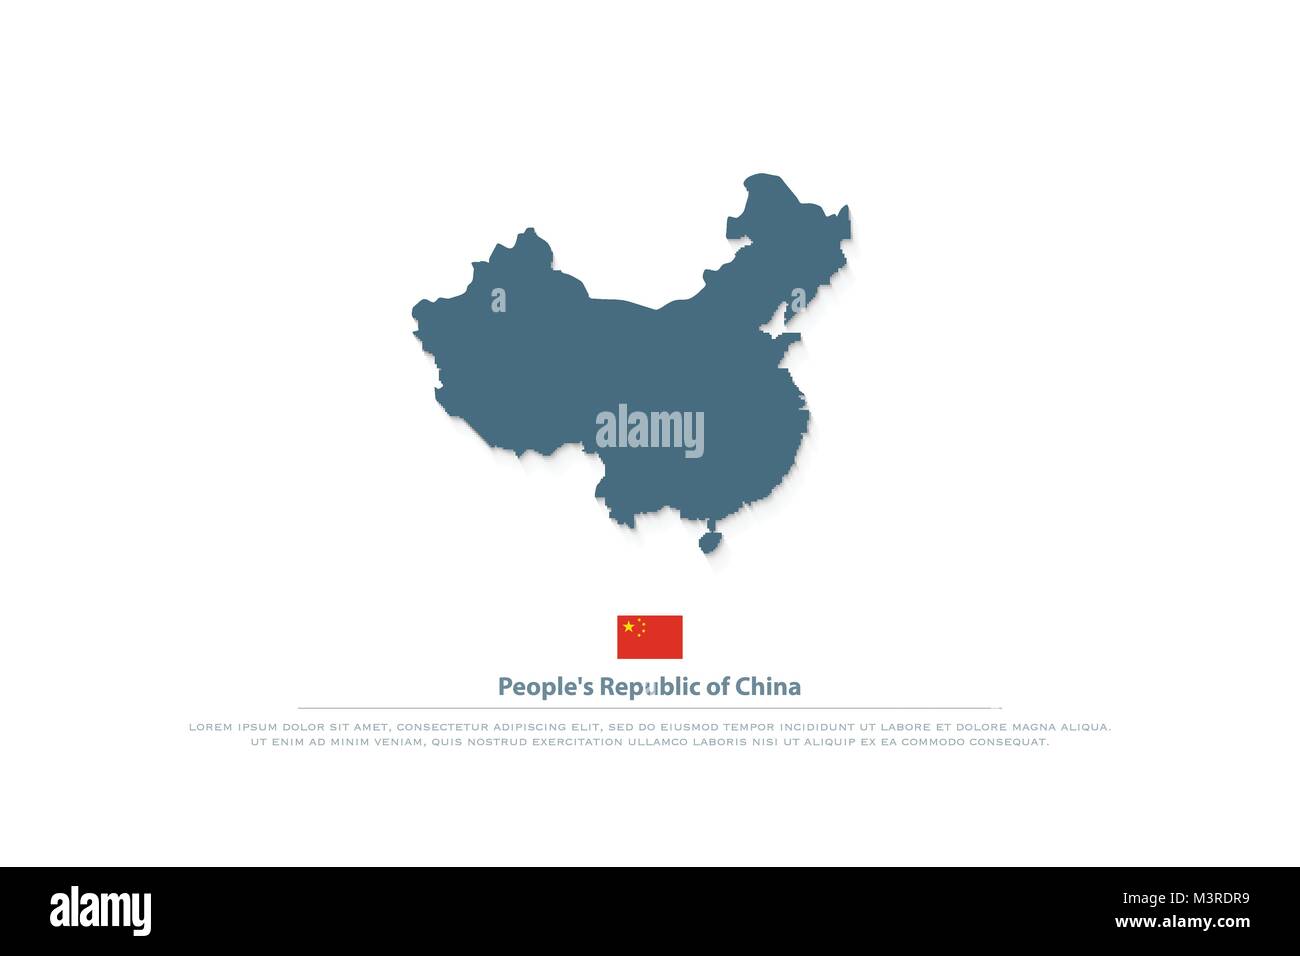 Volksrepublik China isoliert Karte und offizielle Flagge Symbole. Vektor chinesische politische Karte Abbildung. Asiatische Land geographische Banner Design. t Stock Vektor